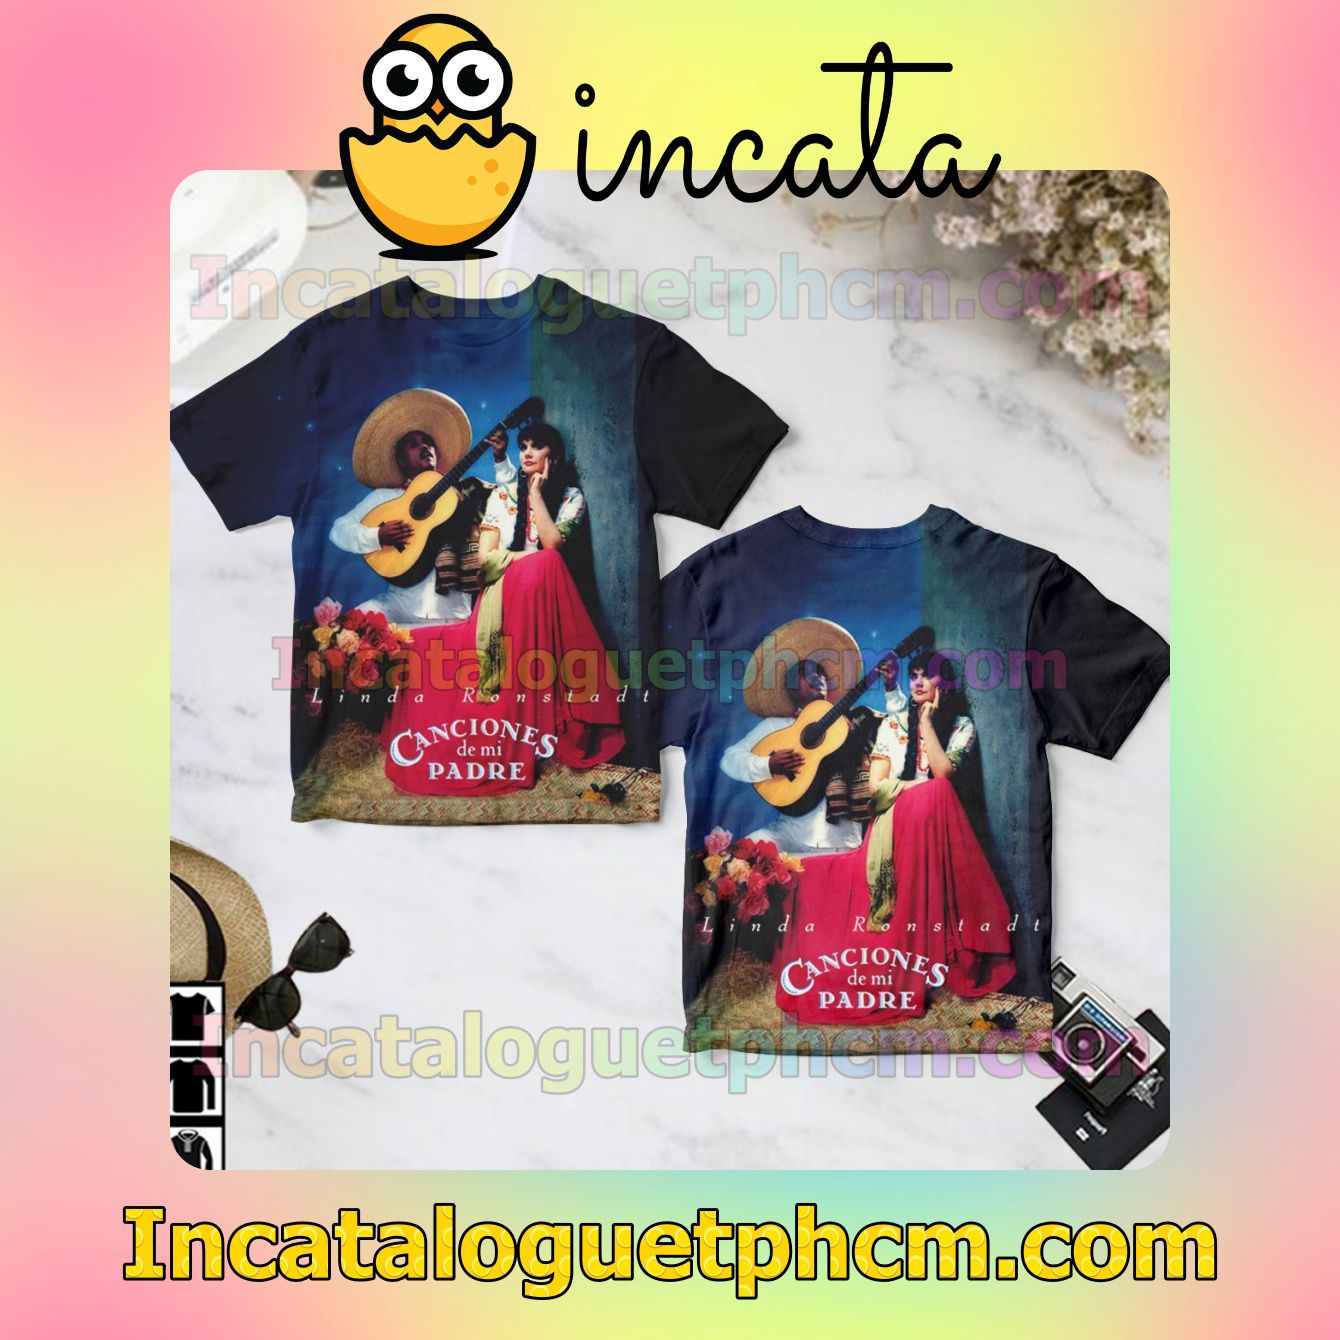 Linda Ronstadt Canciones De Mi Padre Album Cover Gift Shirt